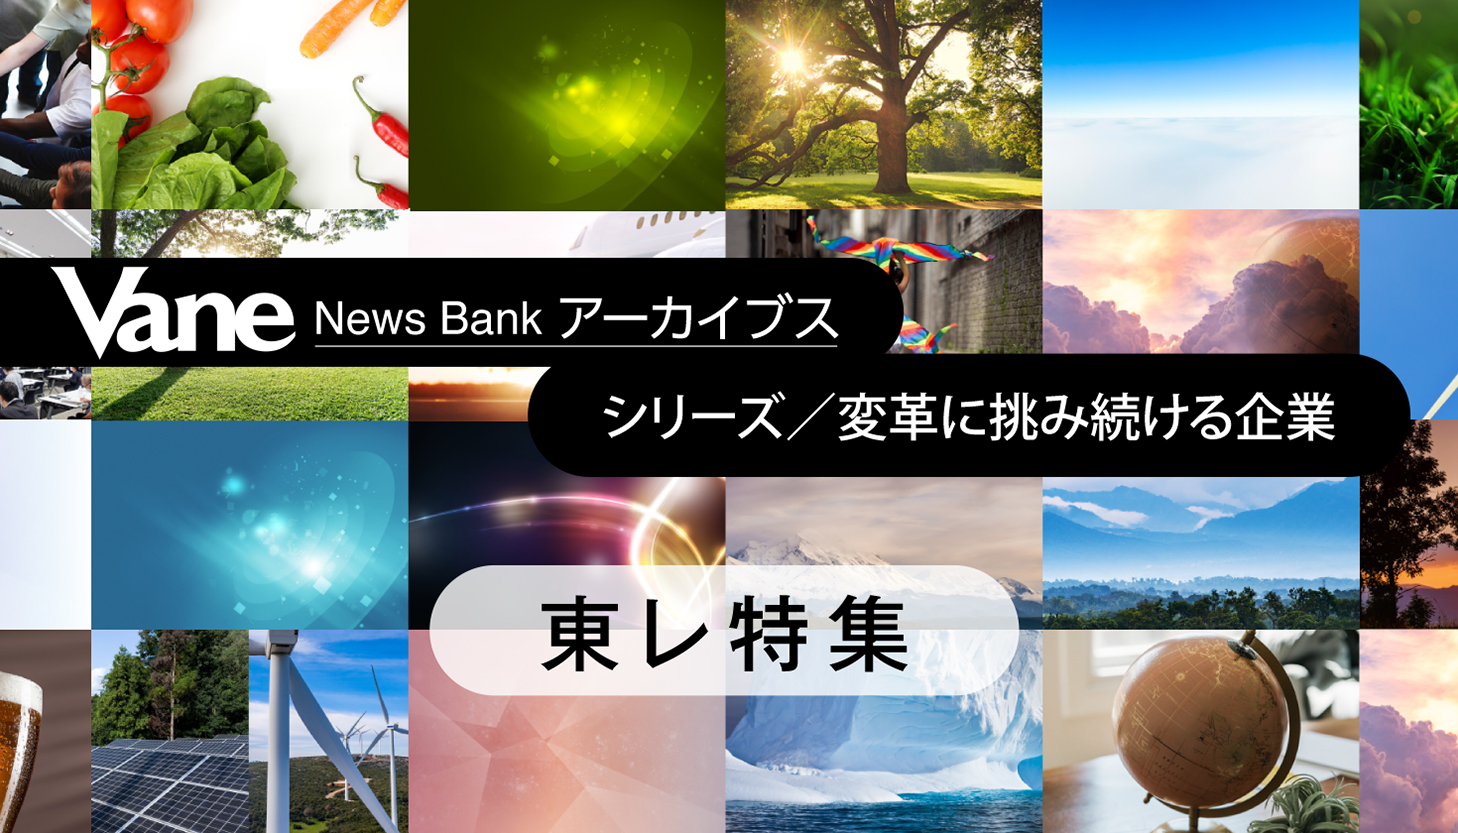 Vane News Bank アーカイブス　東レ株式会社